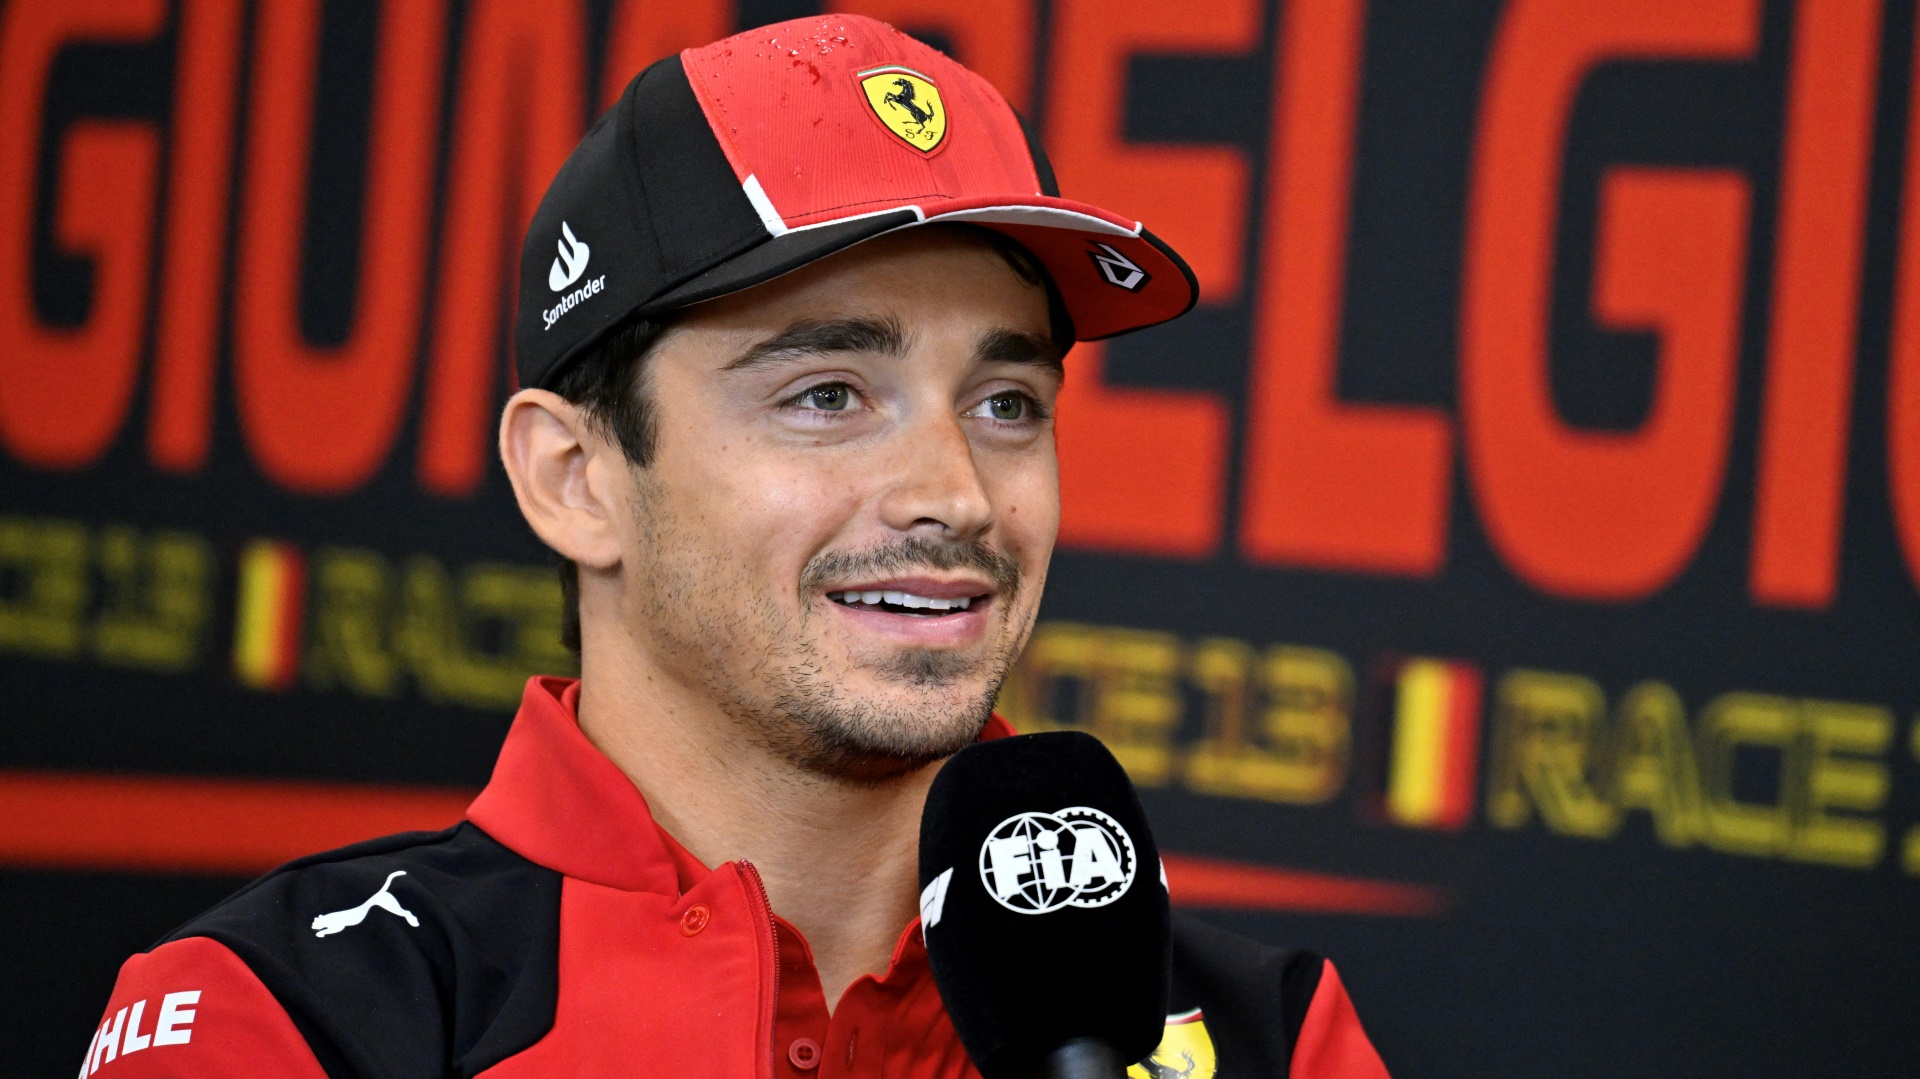 Trotz enttäuschender Saison bleibt Leclerc positiv